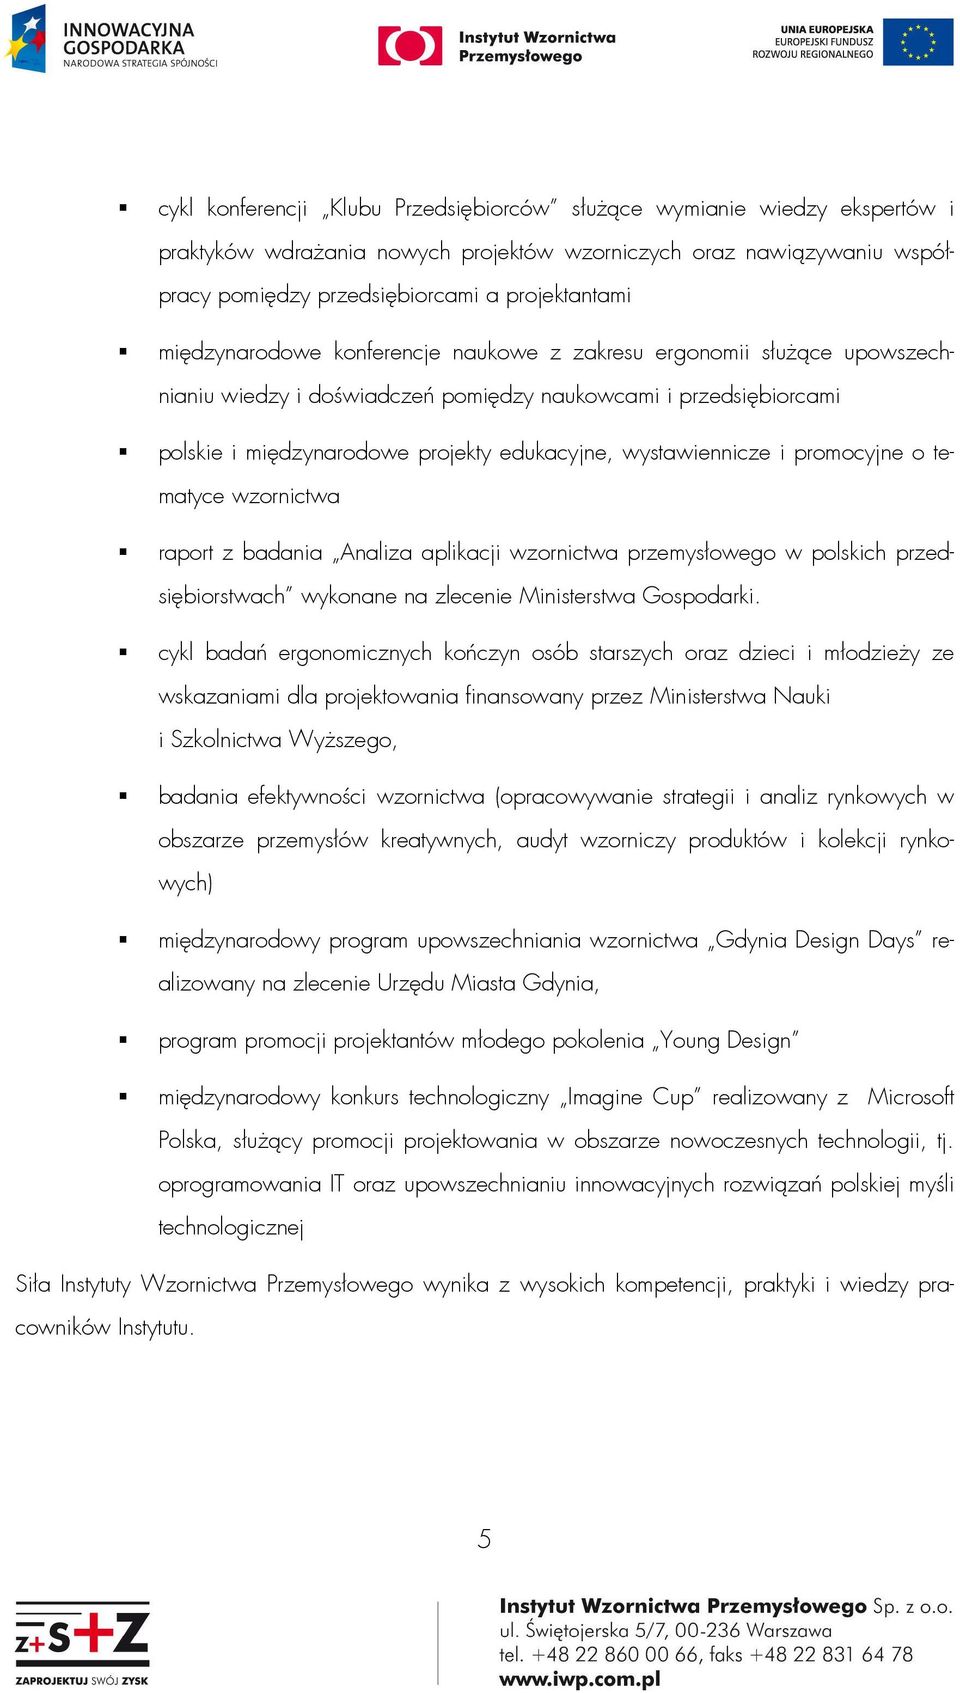 i promocyjne o tematyce wzornictwa raport z badania Analiza aplikacji wzornictwa przemysłowego w polskich przedsiębiorstwach wykonane na zlecenie Ministerstwa Gospodarki.